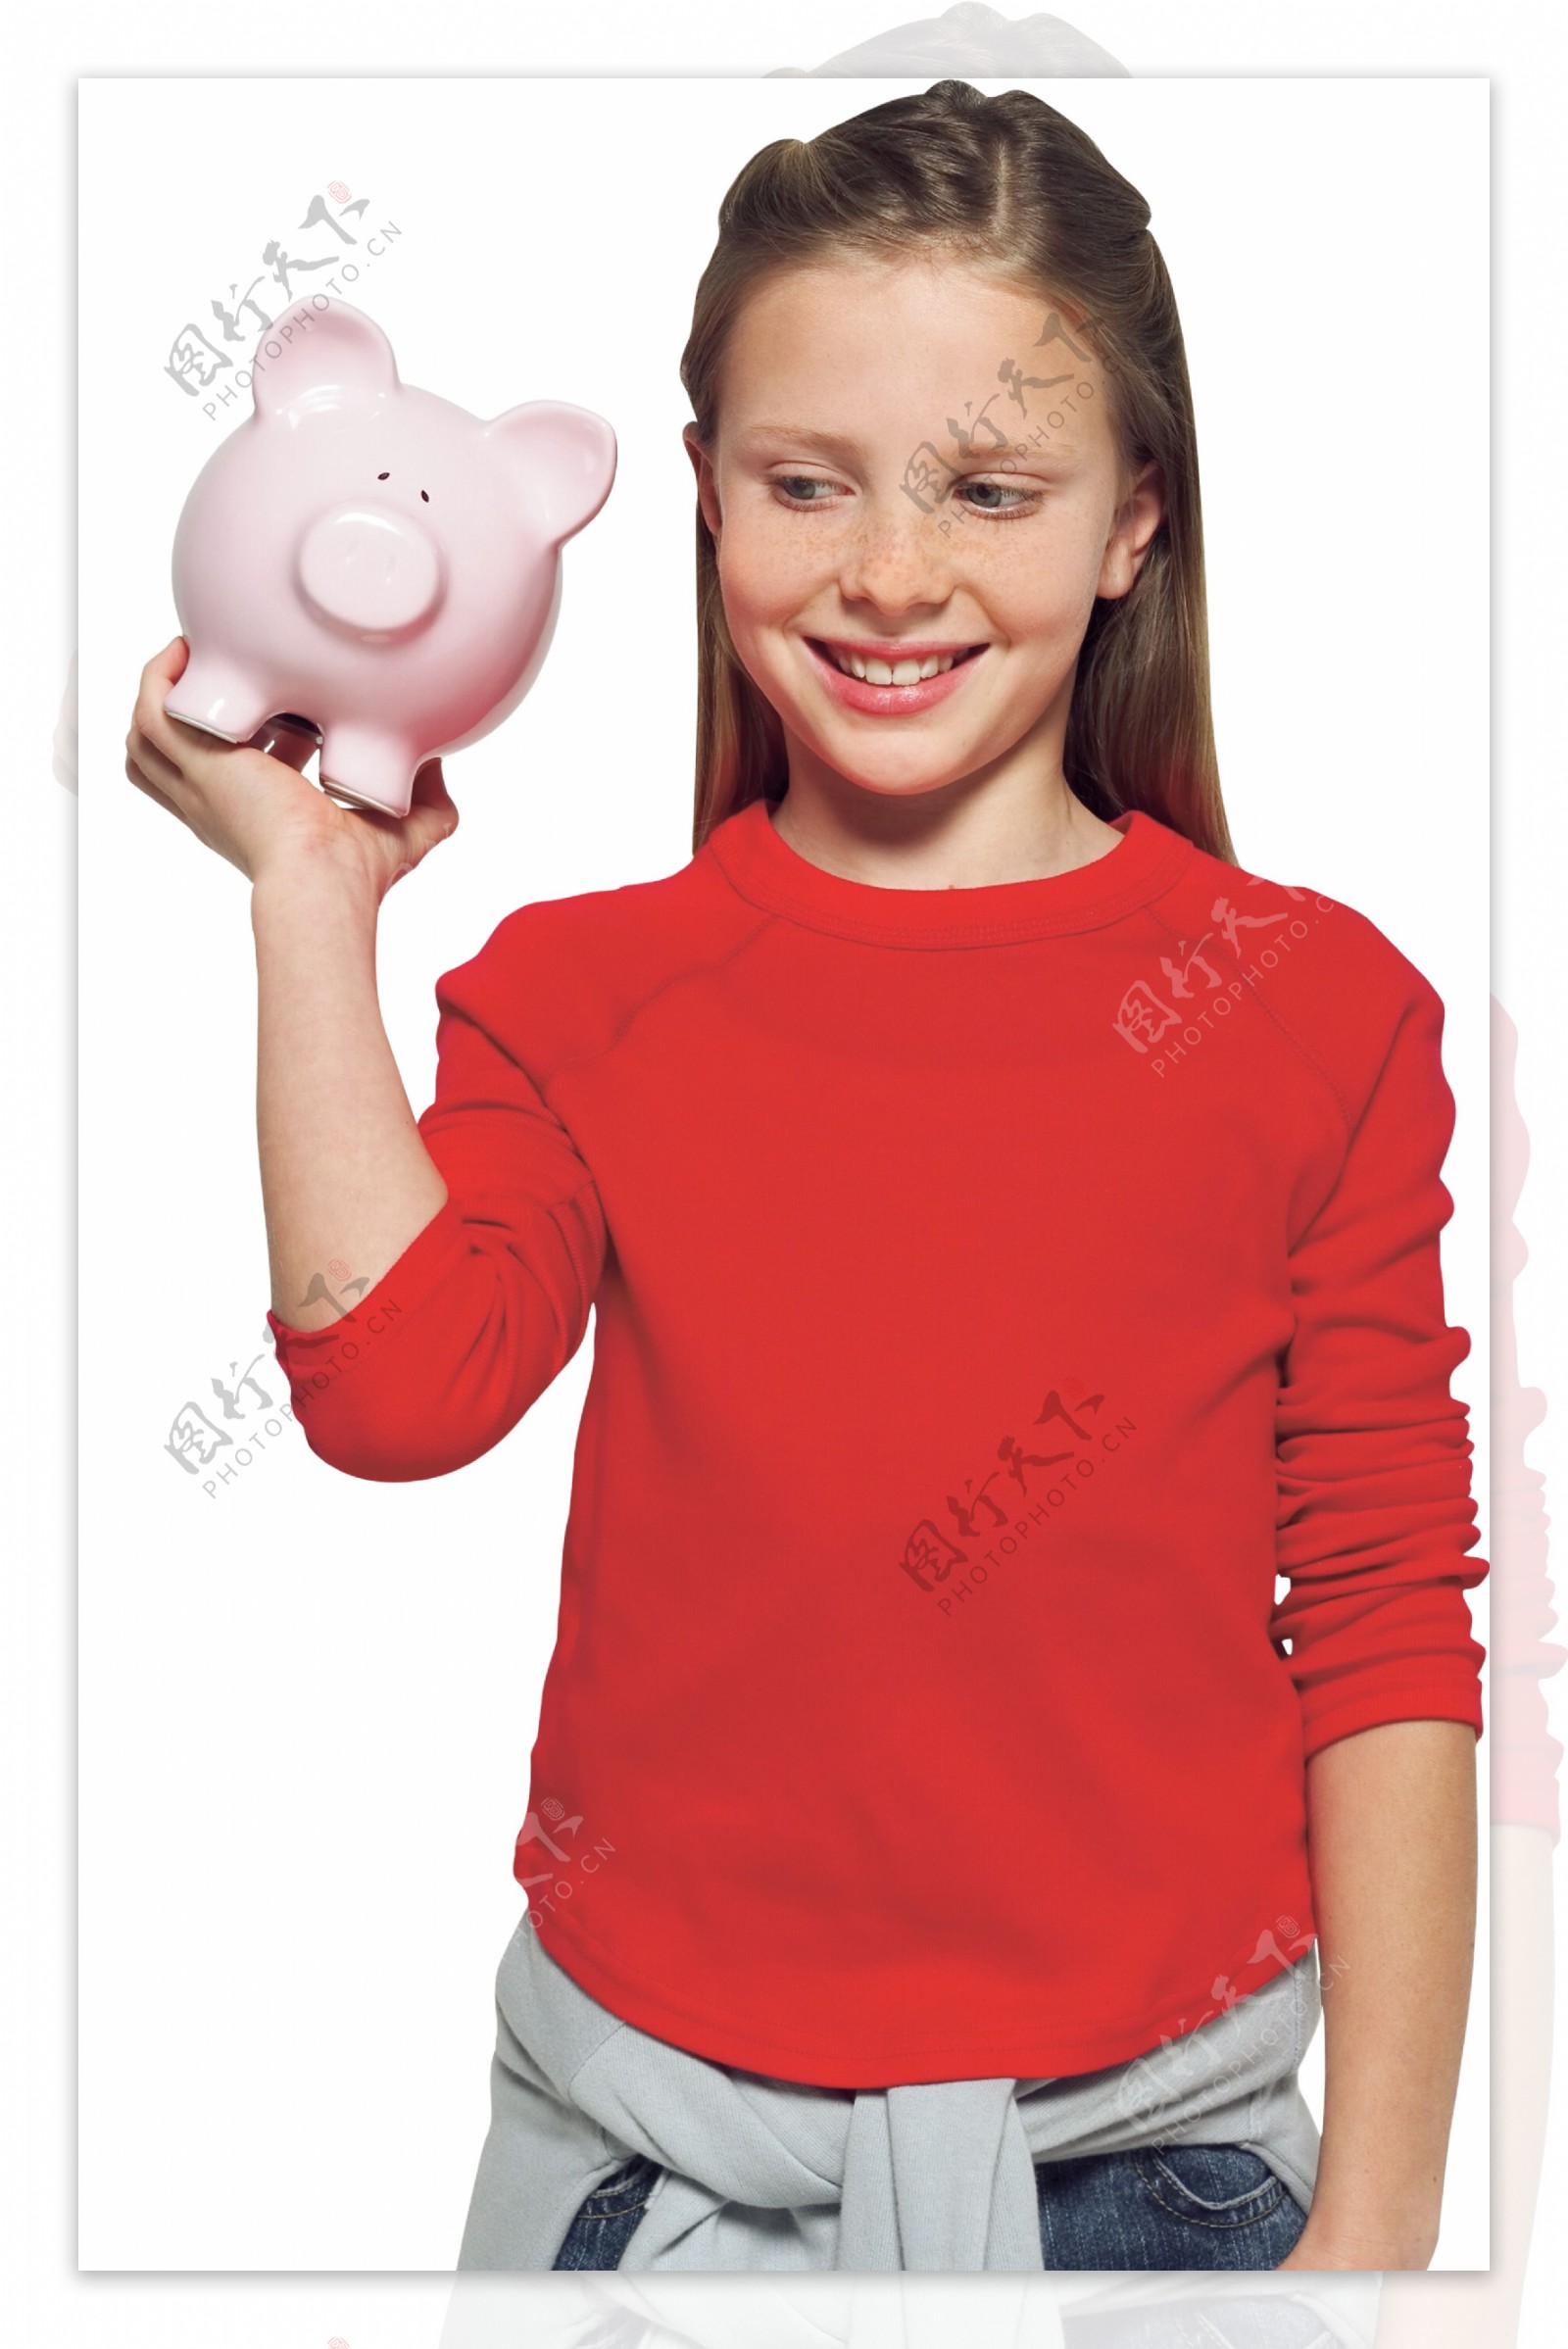 手托储钱猪的小女孩图片